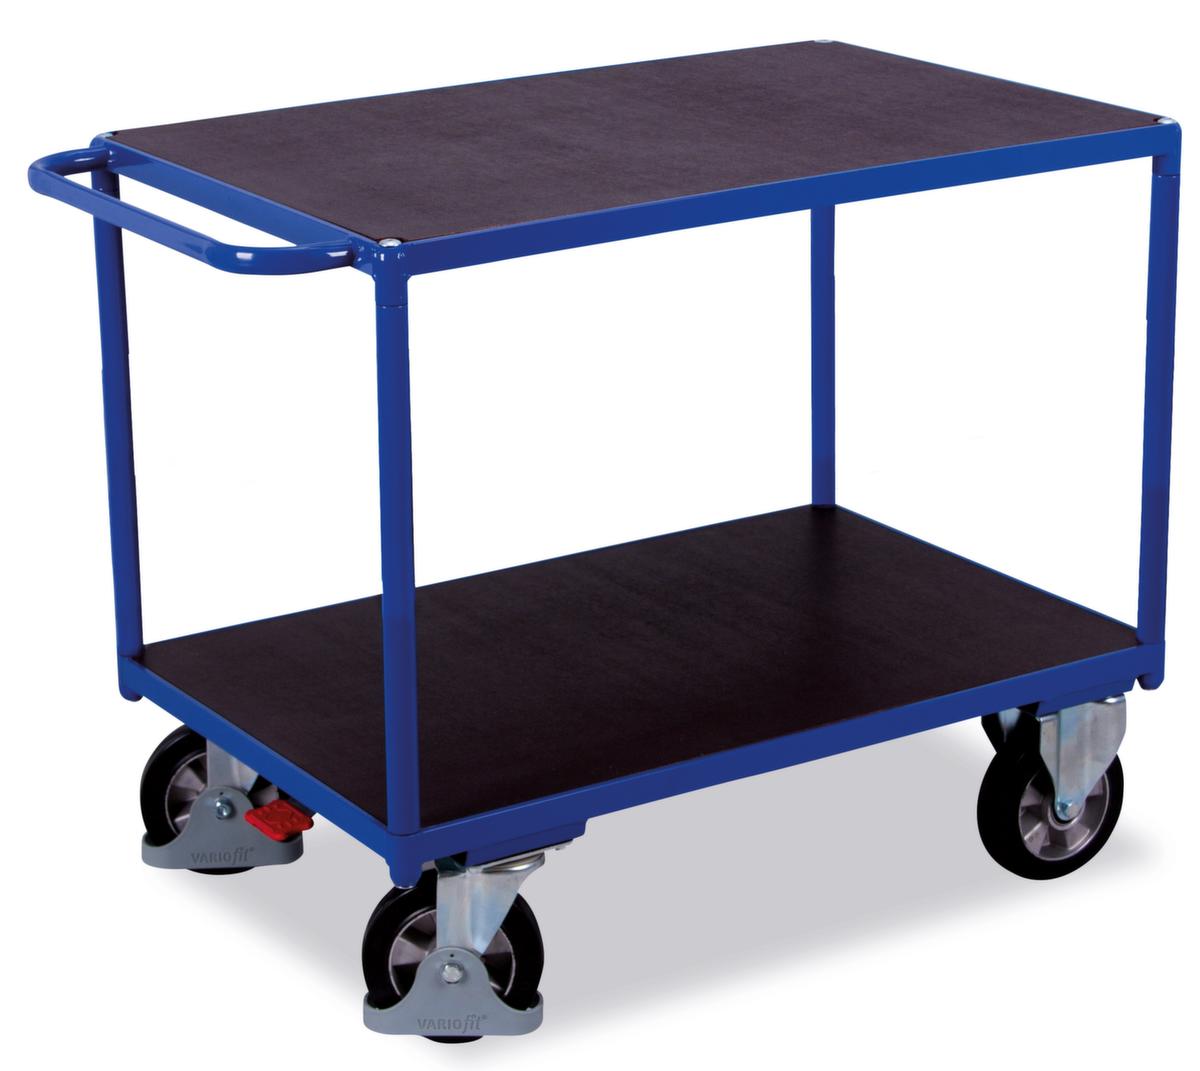 VARIOfit Tischwagen mit rutschfesten Etagen 995x700 mm, Traglast 1000 kg, 2 Etagen Standard 1 ZOOM